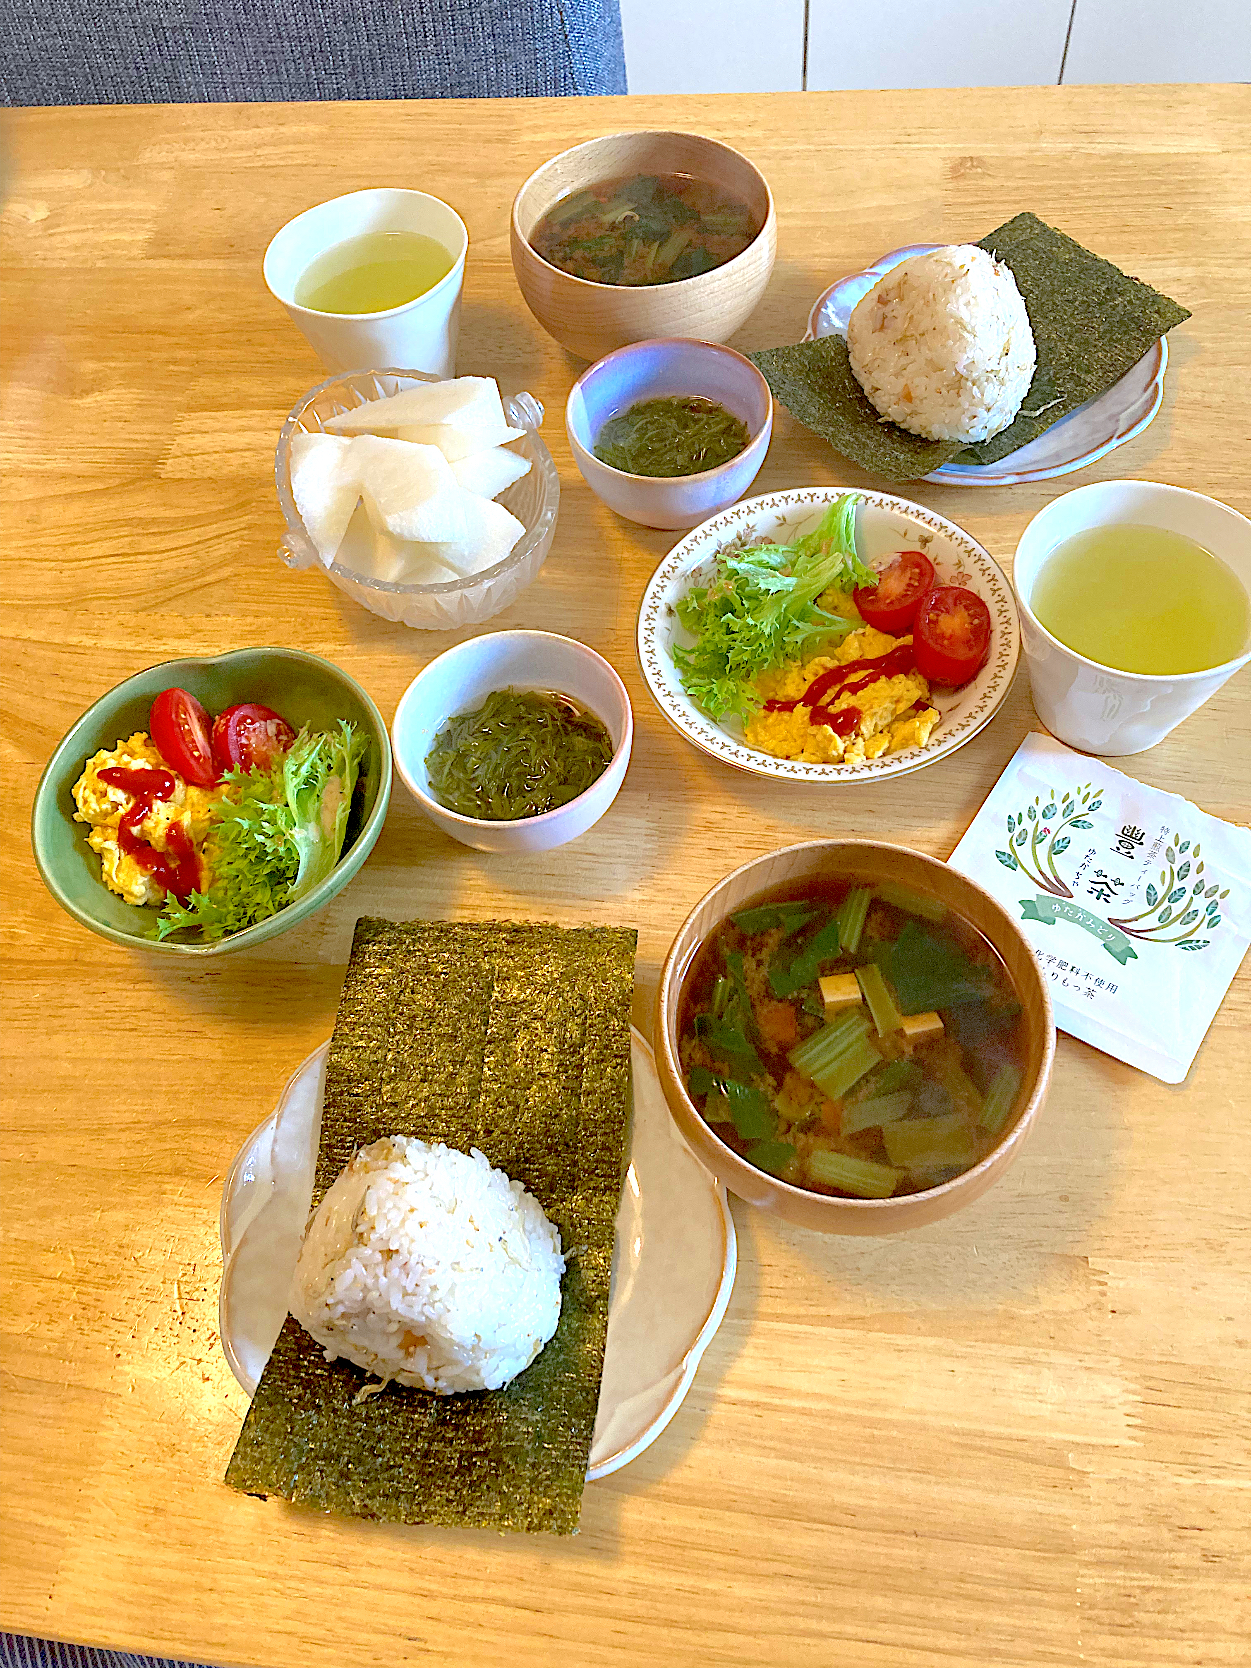 お雑魚と梅の炊き込みご飯🍙♡めかぶ♡スクランブルエッグサラダ♡小松菜とお豆腐のお味噌汁♡新高梨♡宮崎土産の緑茶♡